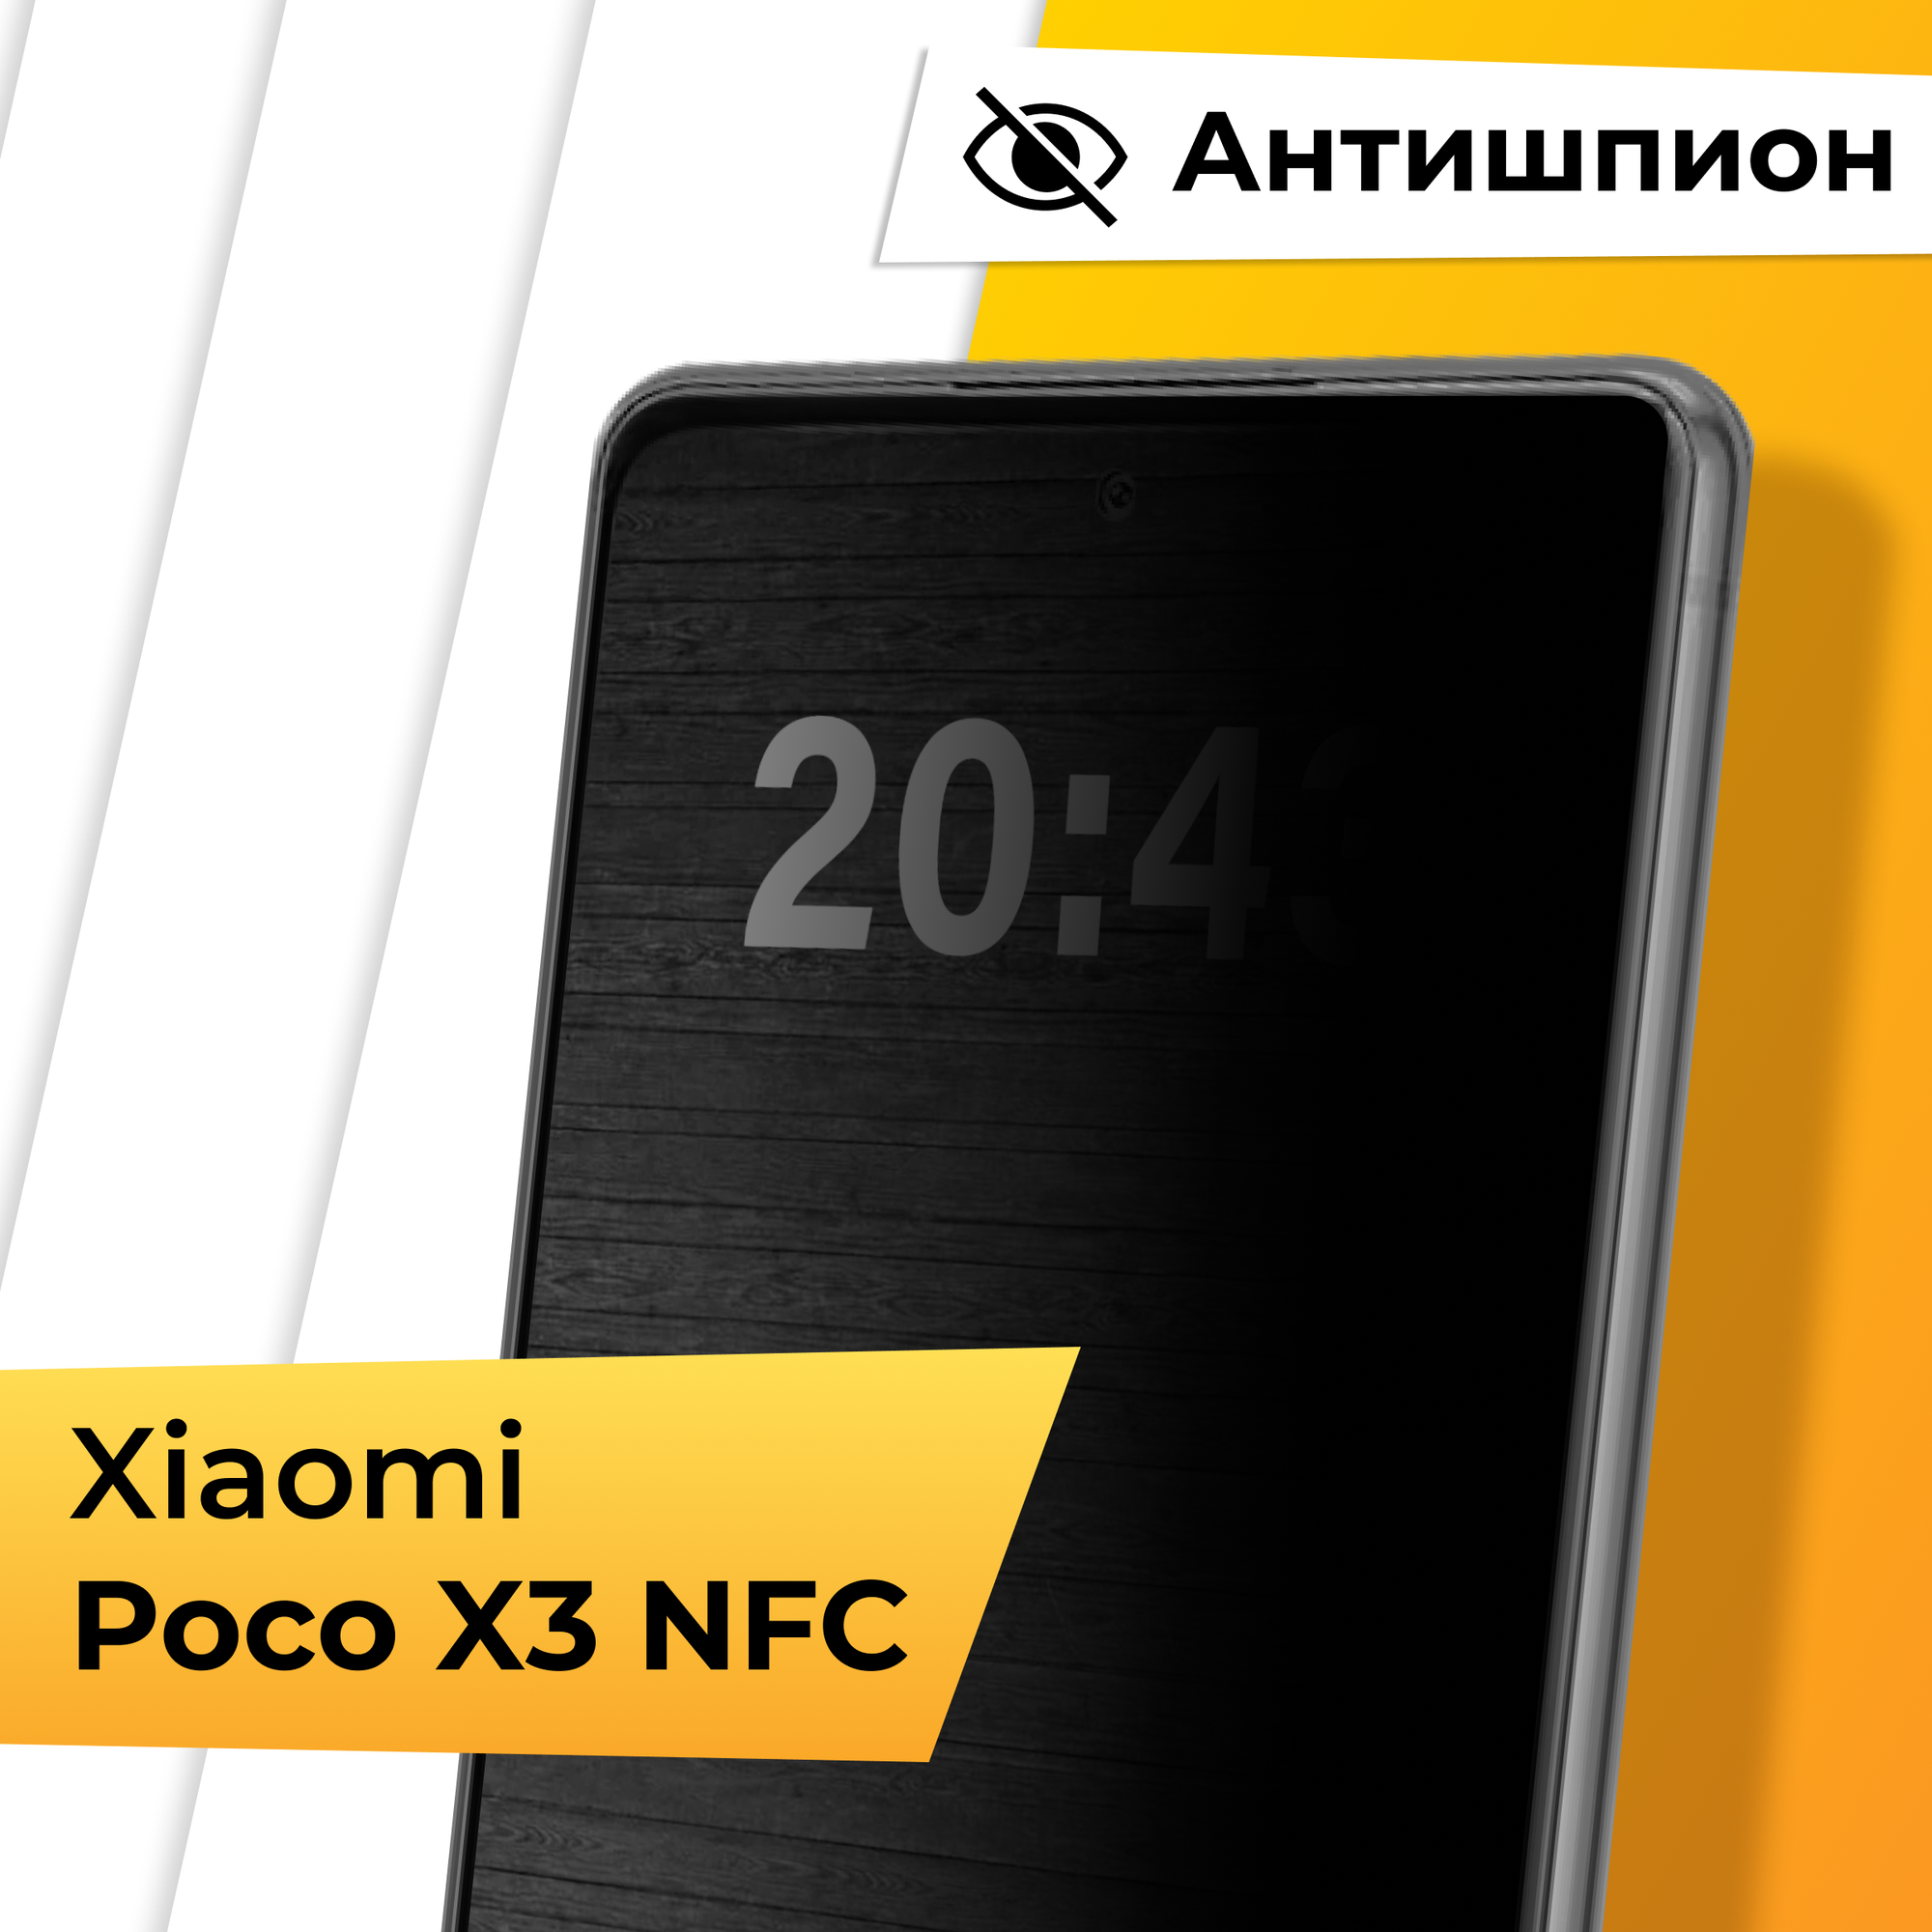 Противоударное защитное стекло Антишпион для телефона Xiaomi Poco X3 NFC / Закаленное приватное стекло на весь экран для смартфона Сяоми Поко Х3 НФС